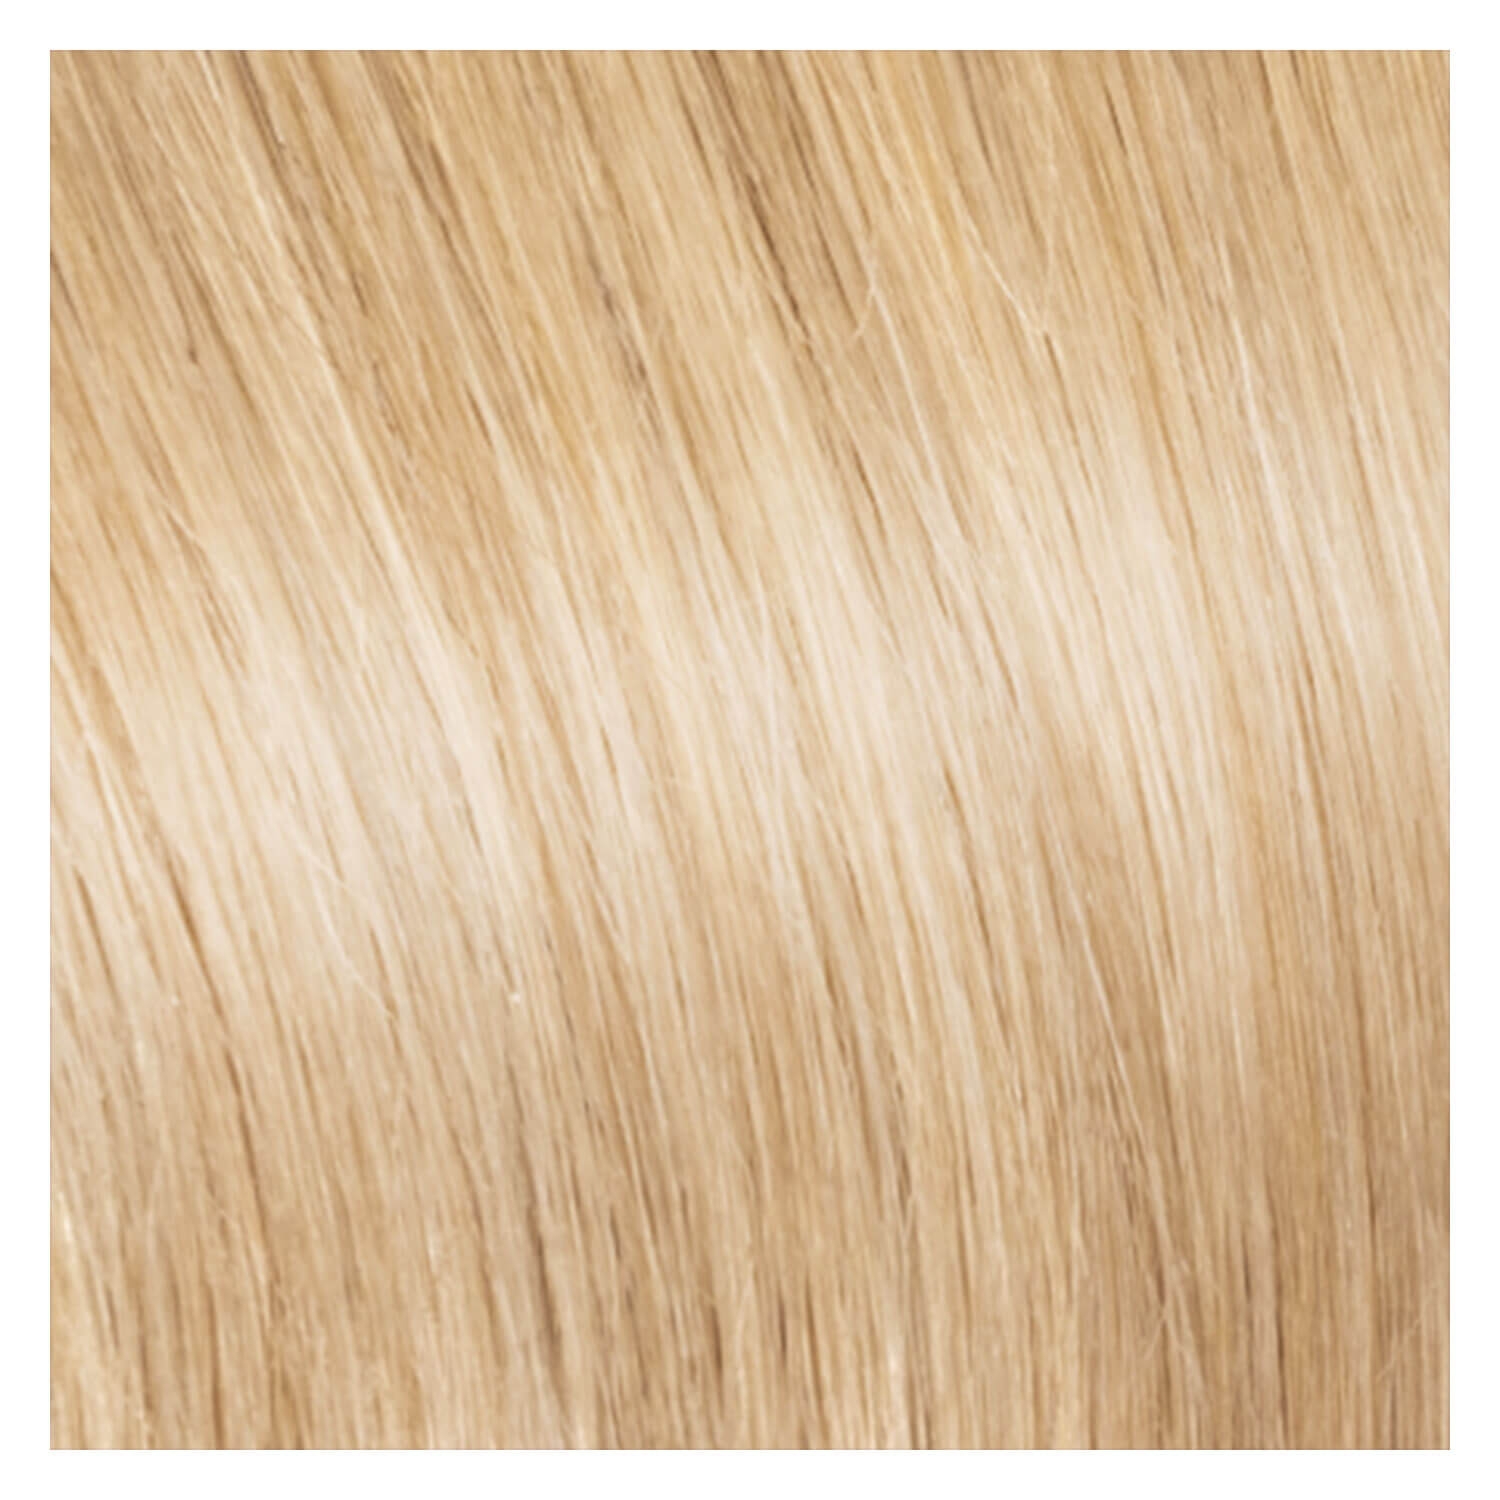 Produktbild von SHE Clip In-System Hair Extensions - DB2 Hellblond 50/55cm/6cm